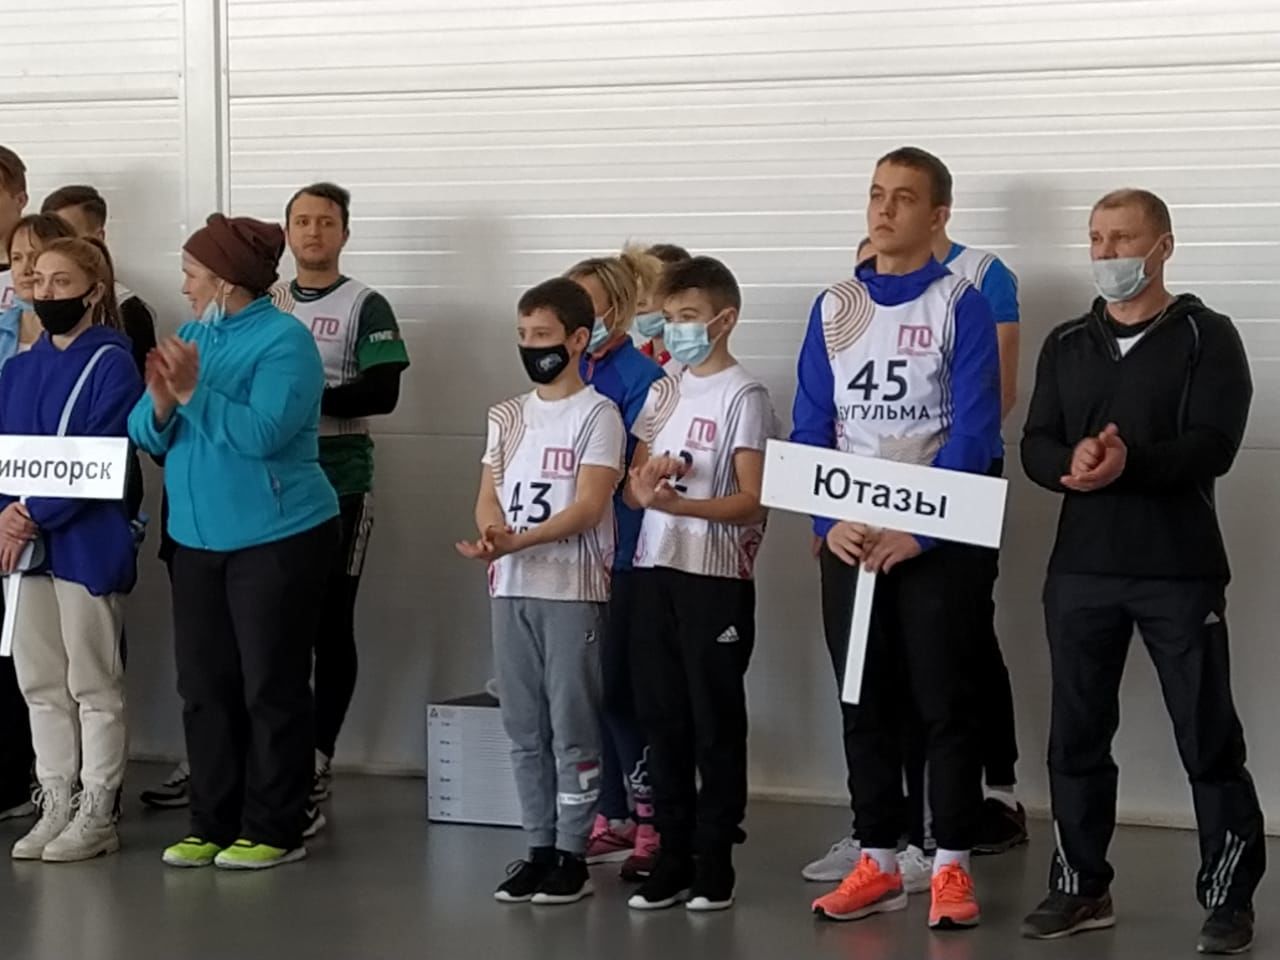 Бугульминская команда победила в соревнованиях по ГТО